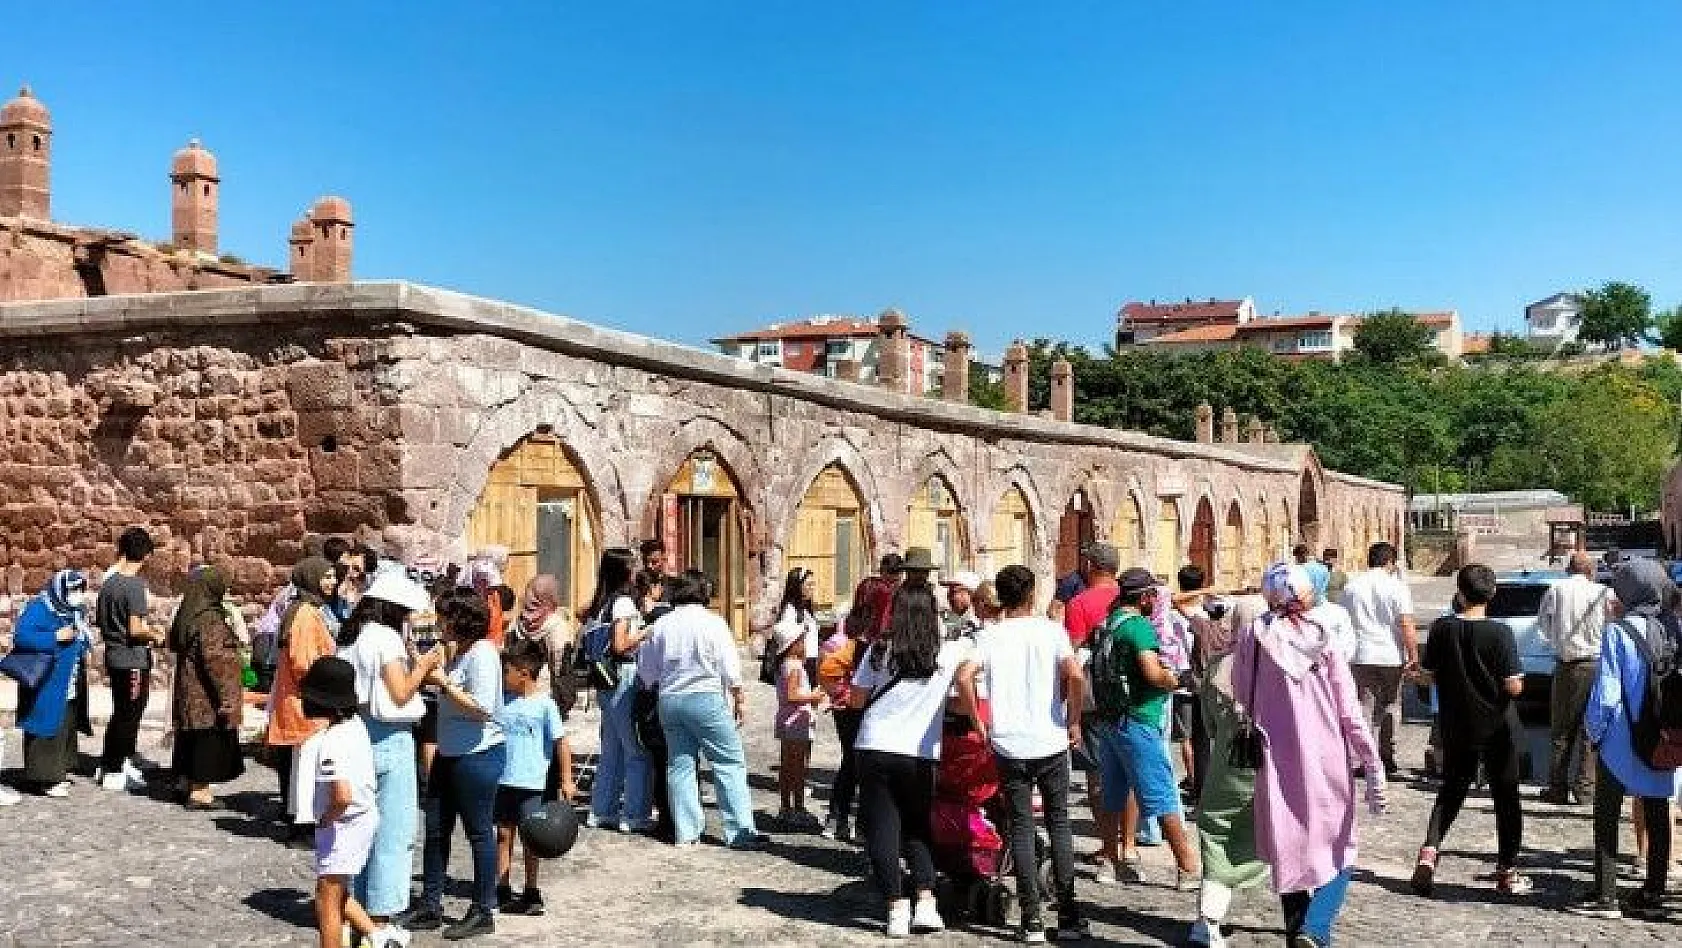 Büyükşehir gurbetçilere Kayseri'yi tanıtıyor